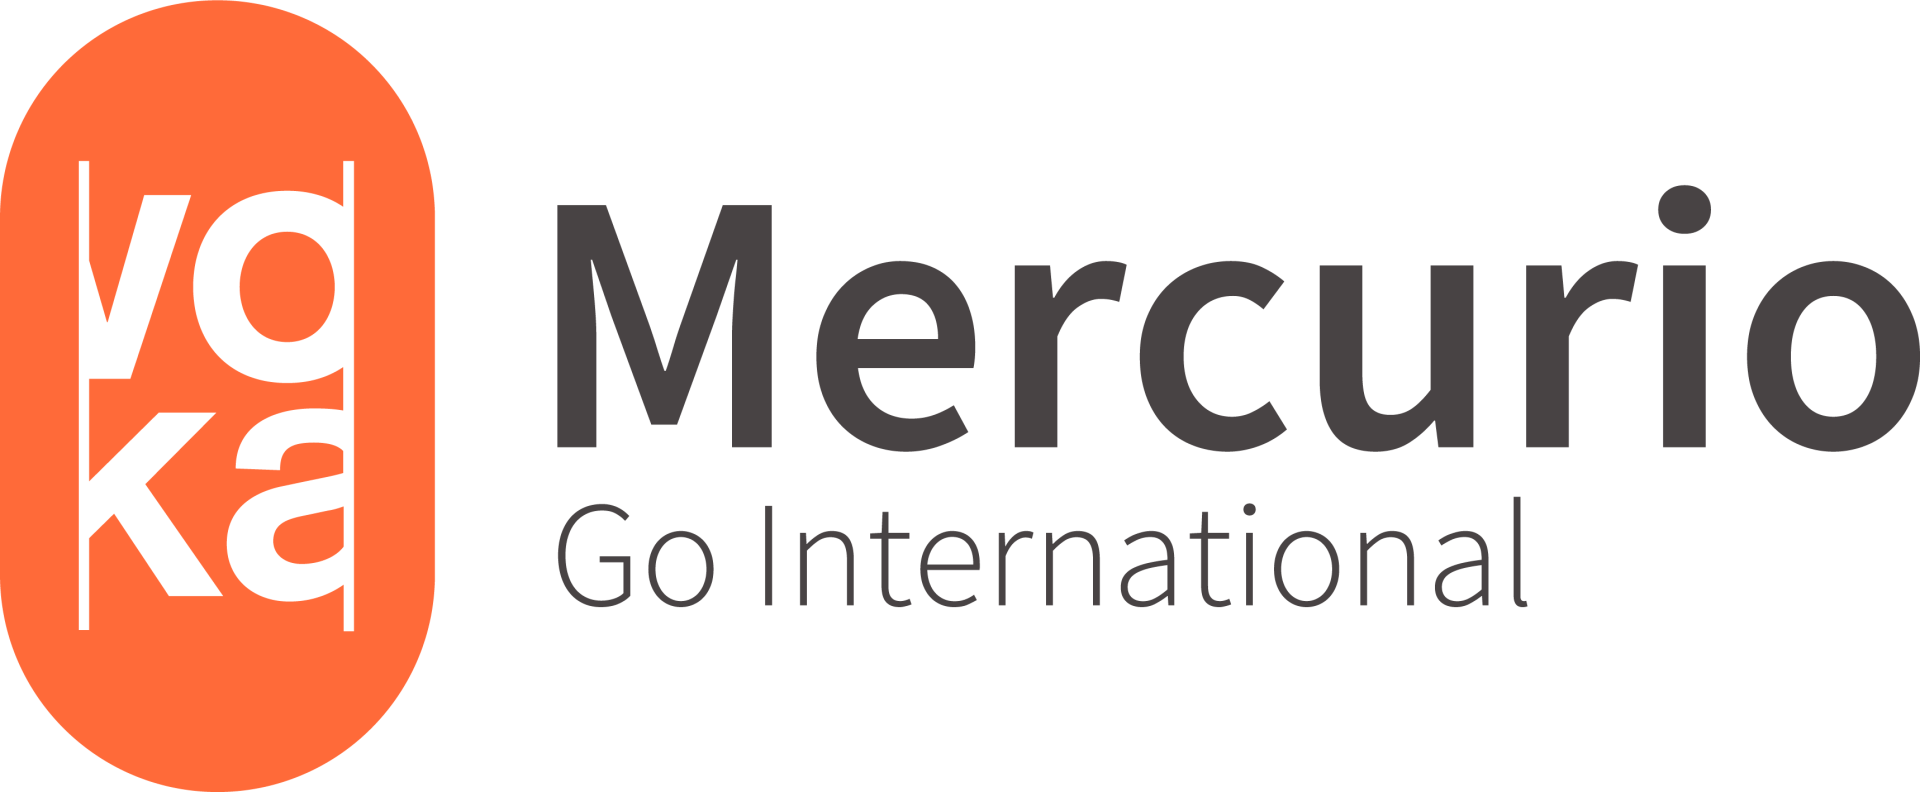 logo mercurio go international